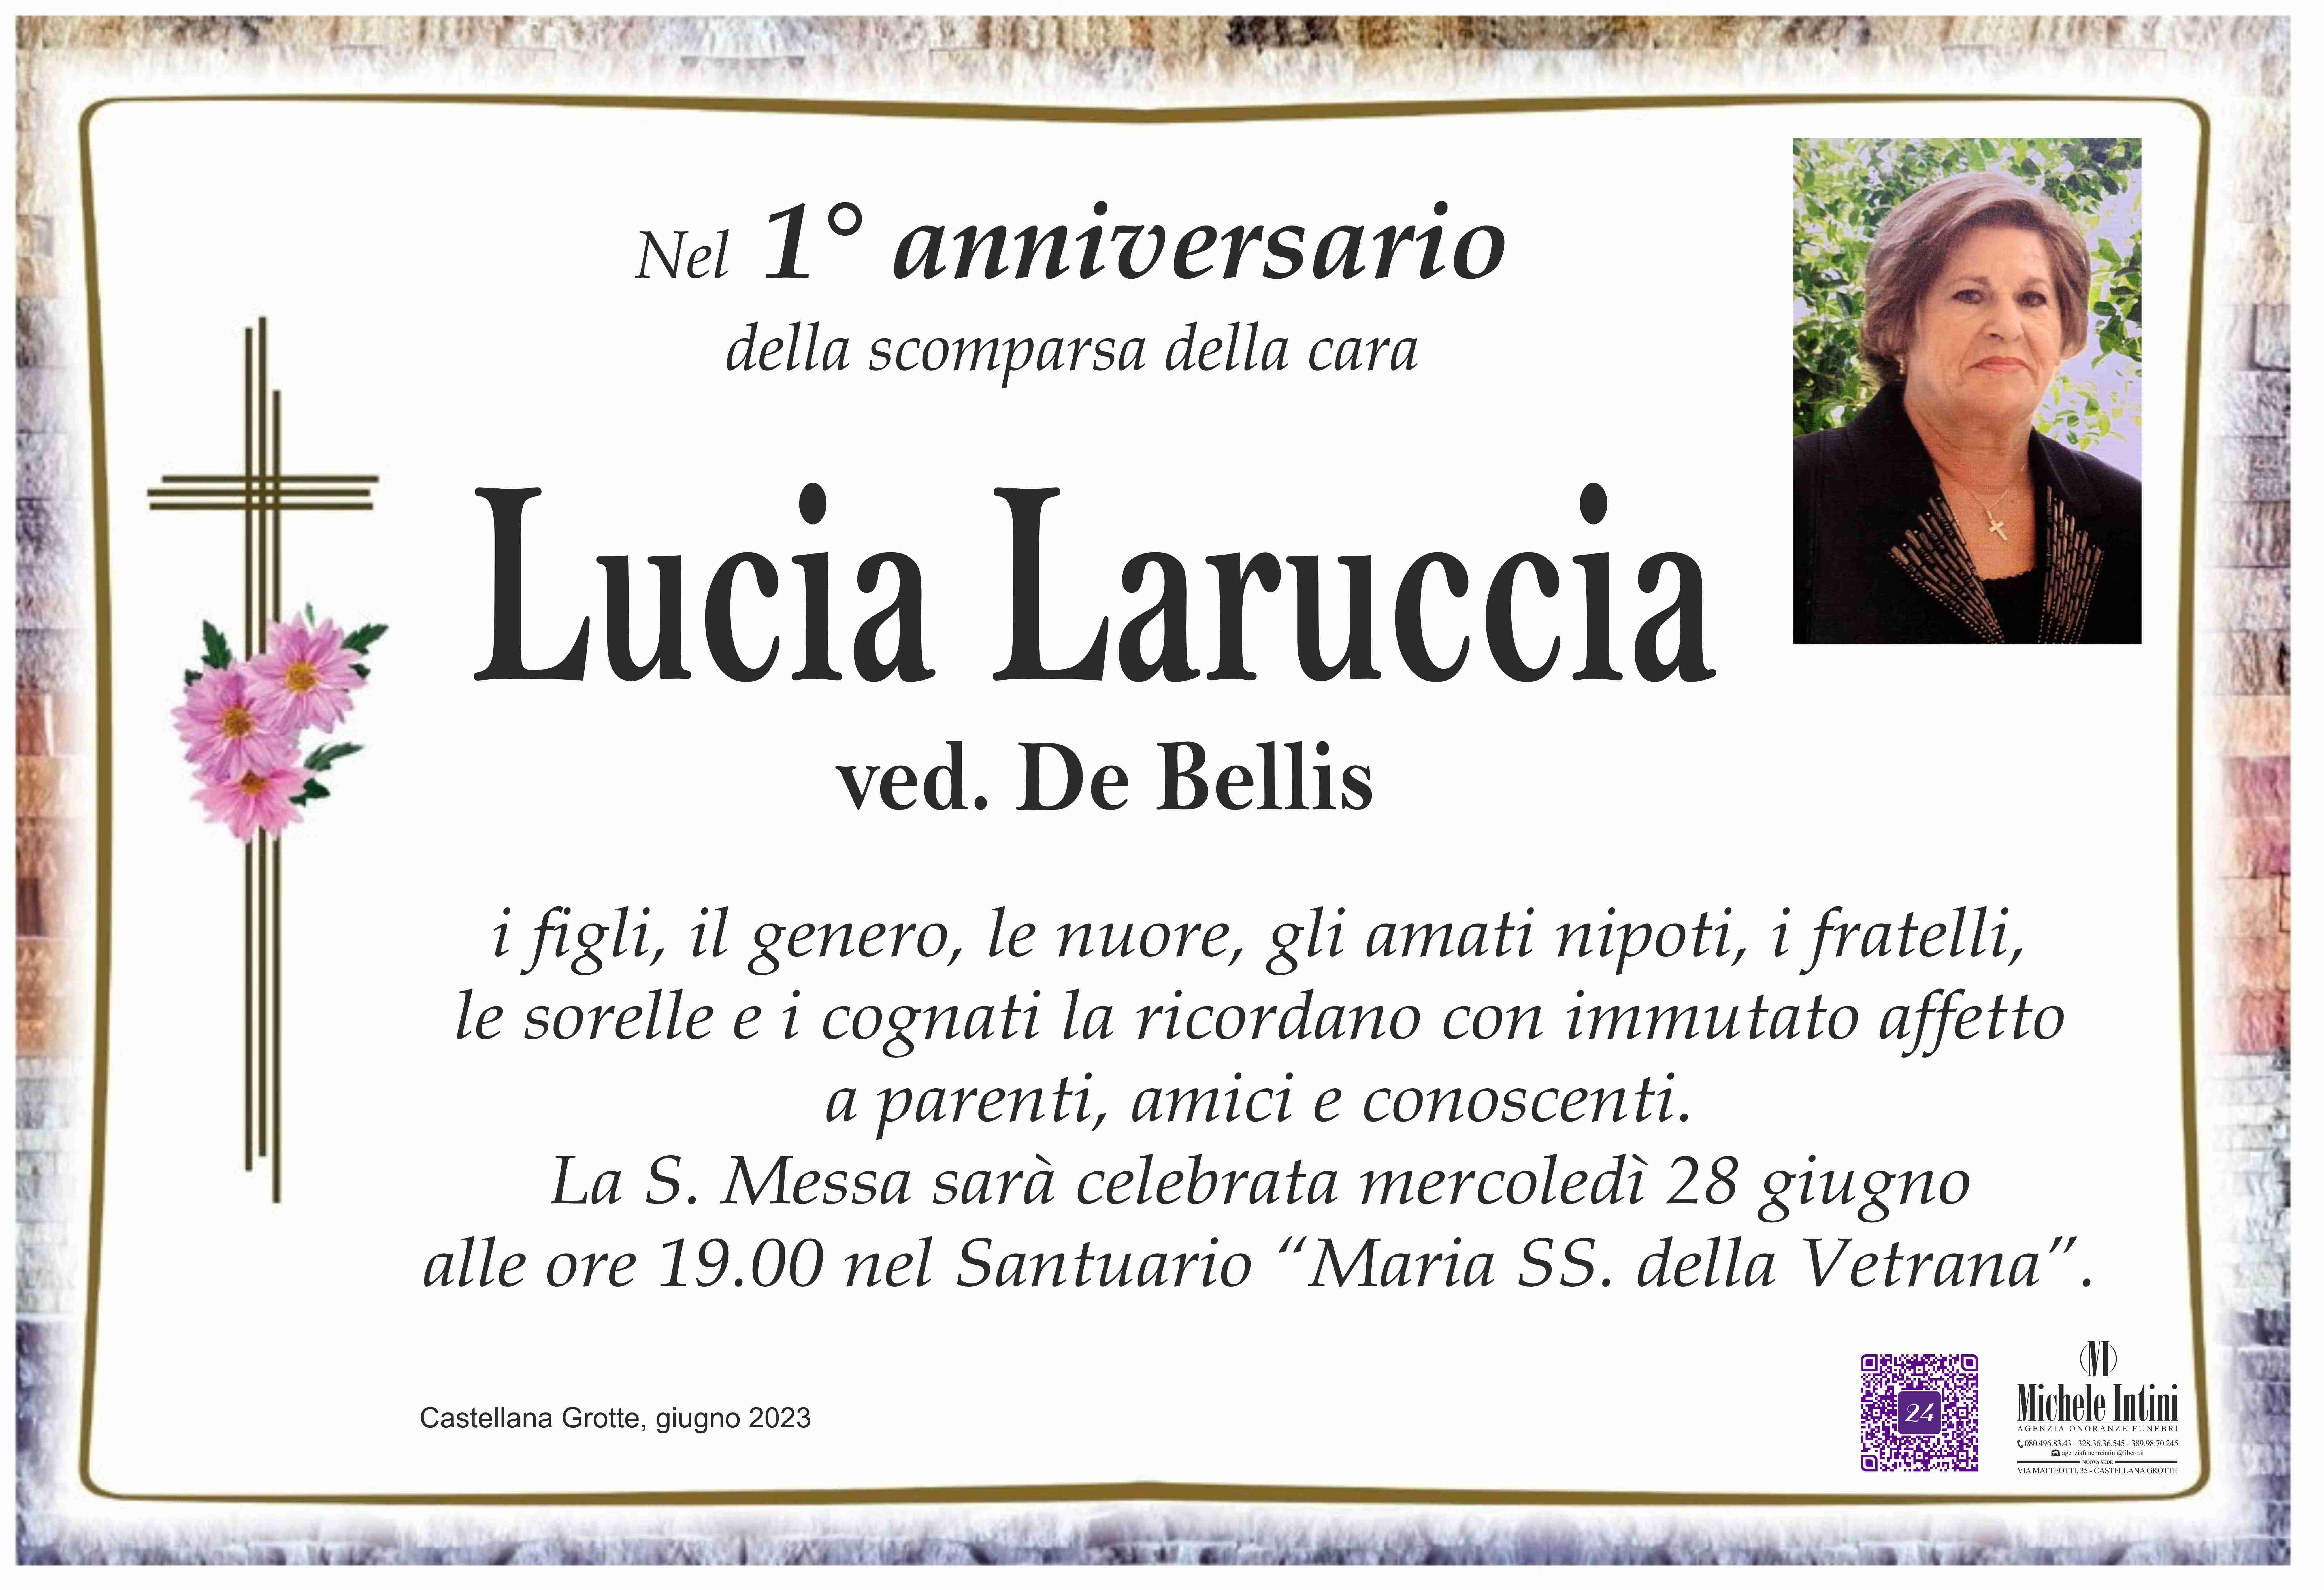 Lucia Laruccia